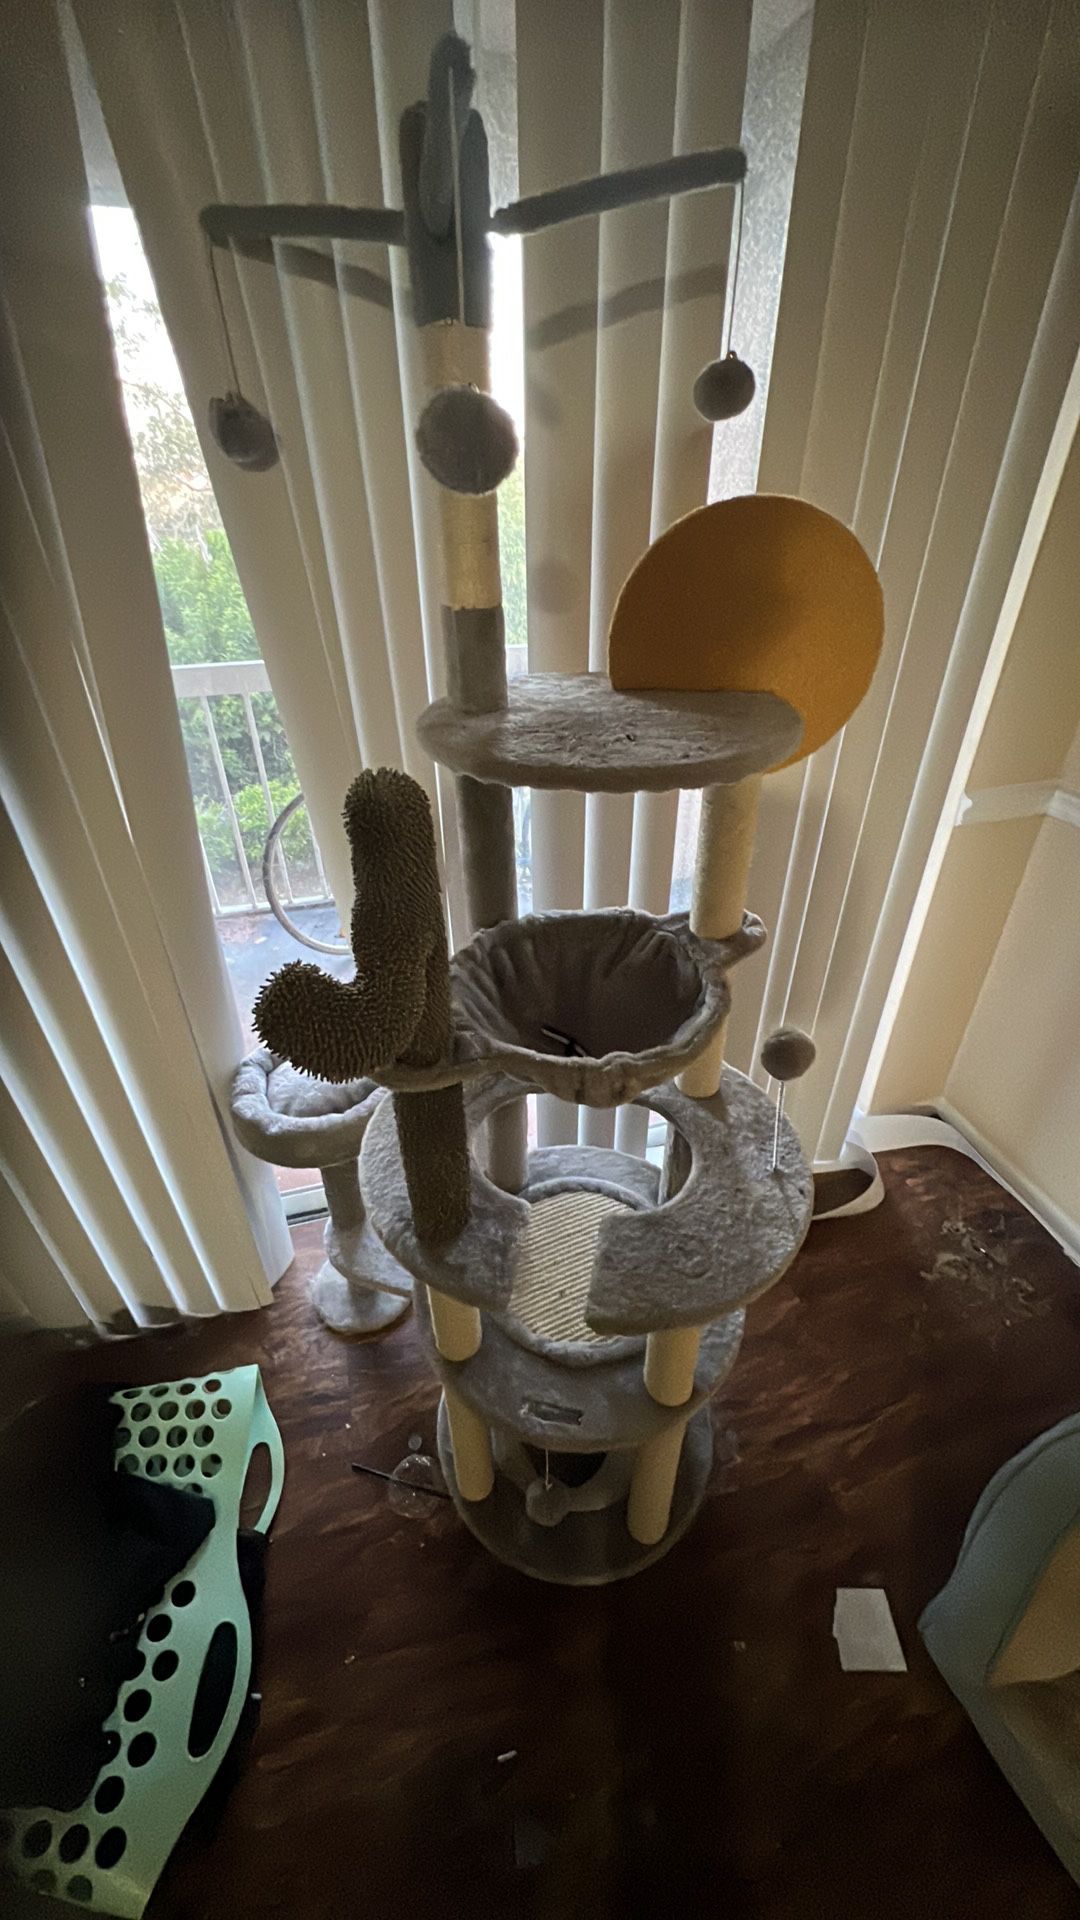 Brand new cat tower